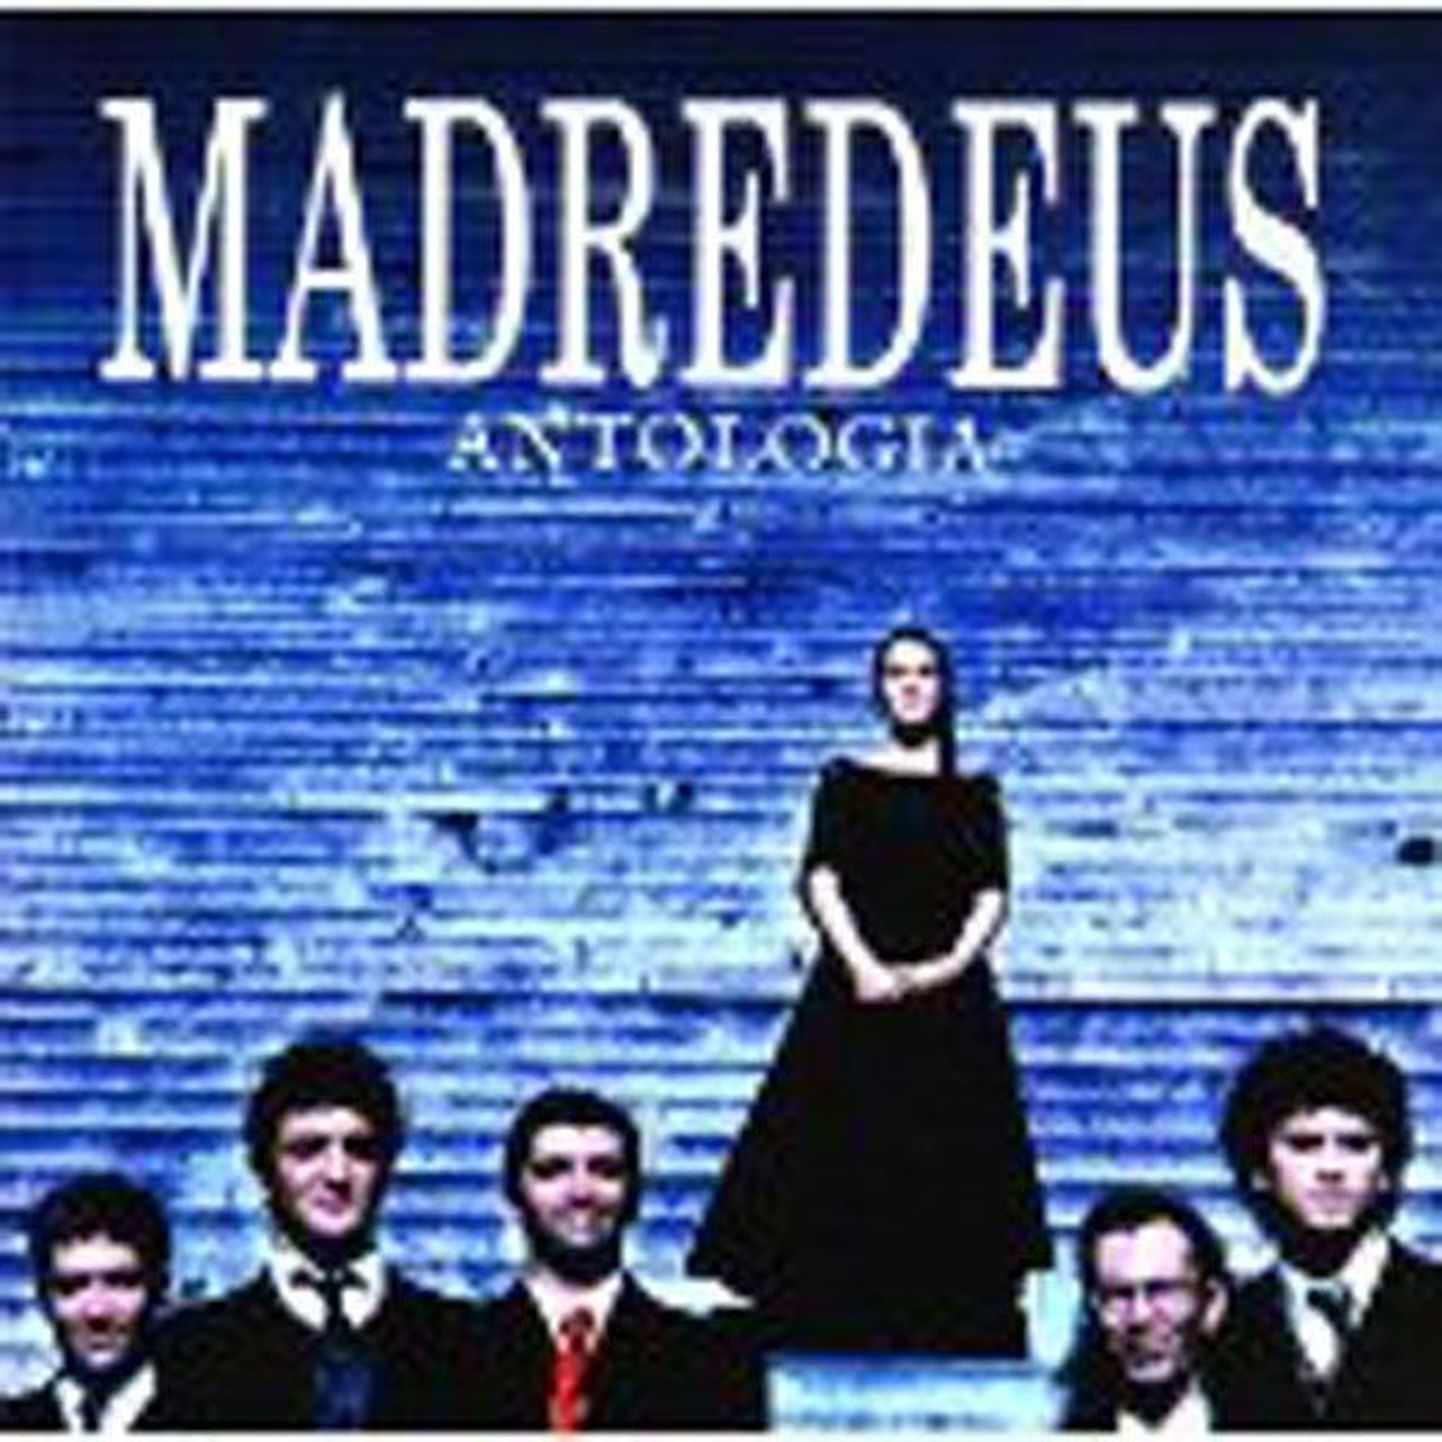 Madredeus
Antologia 
(EMI)